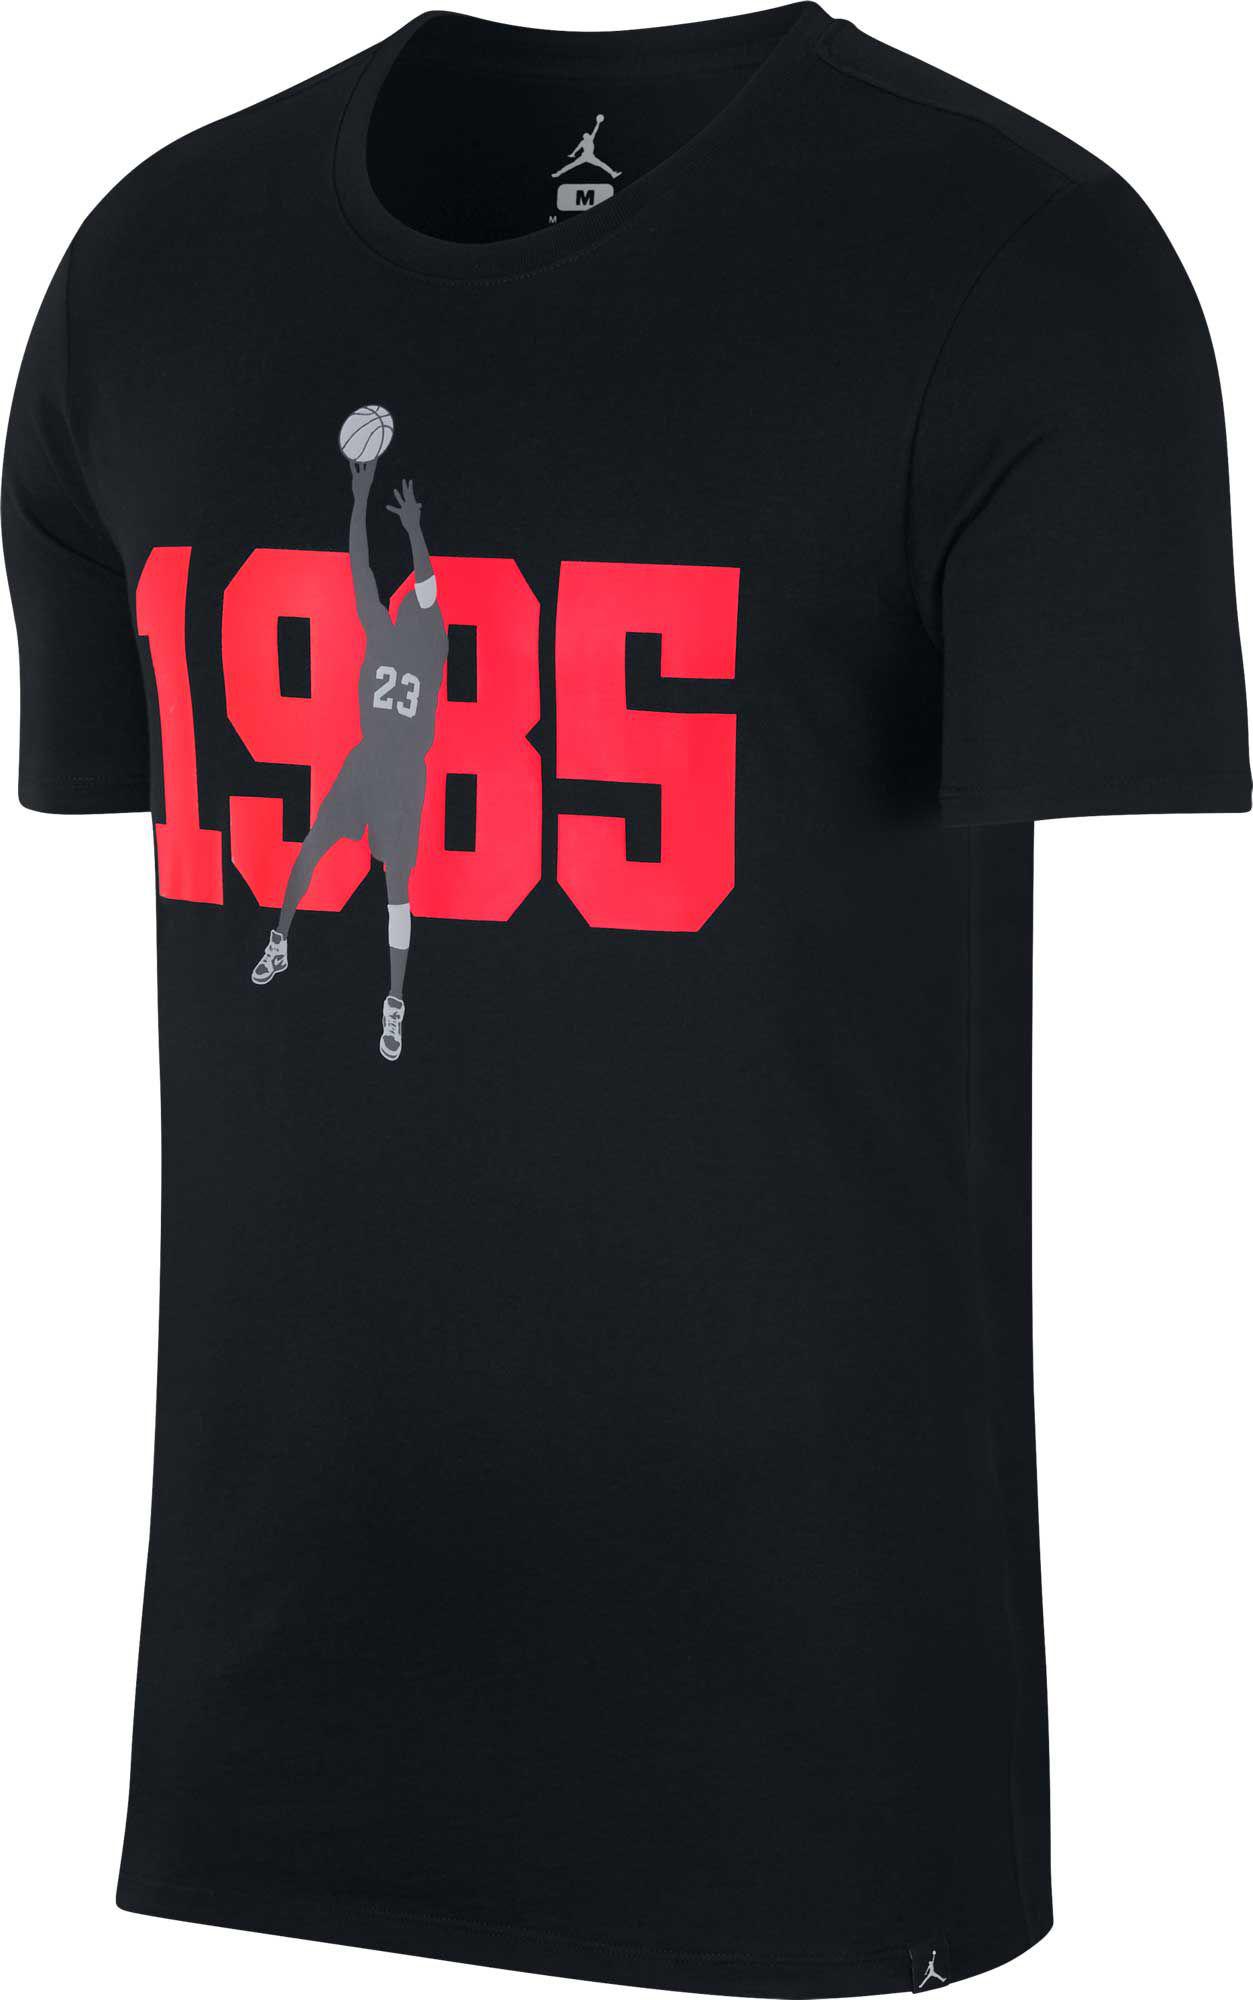 jordan 1985 shirt